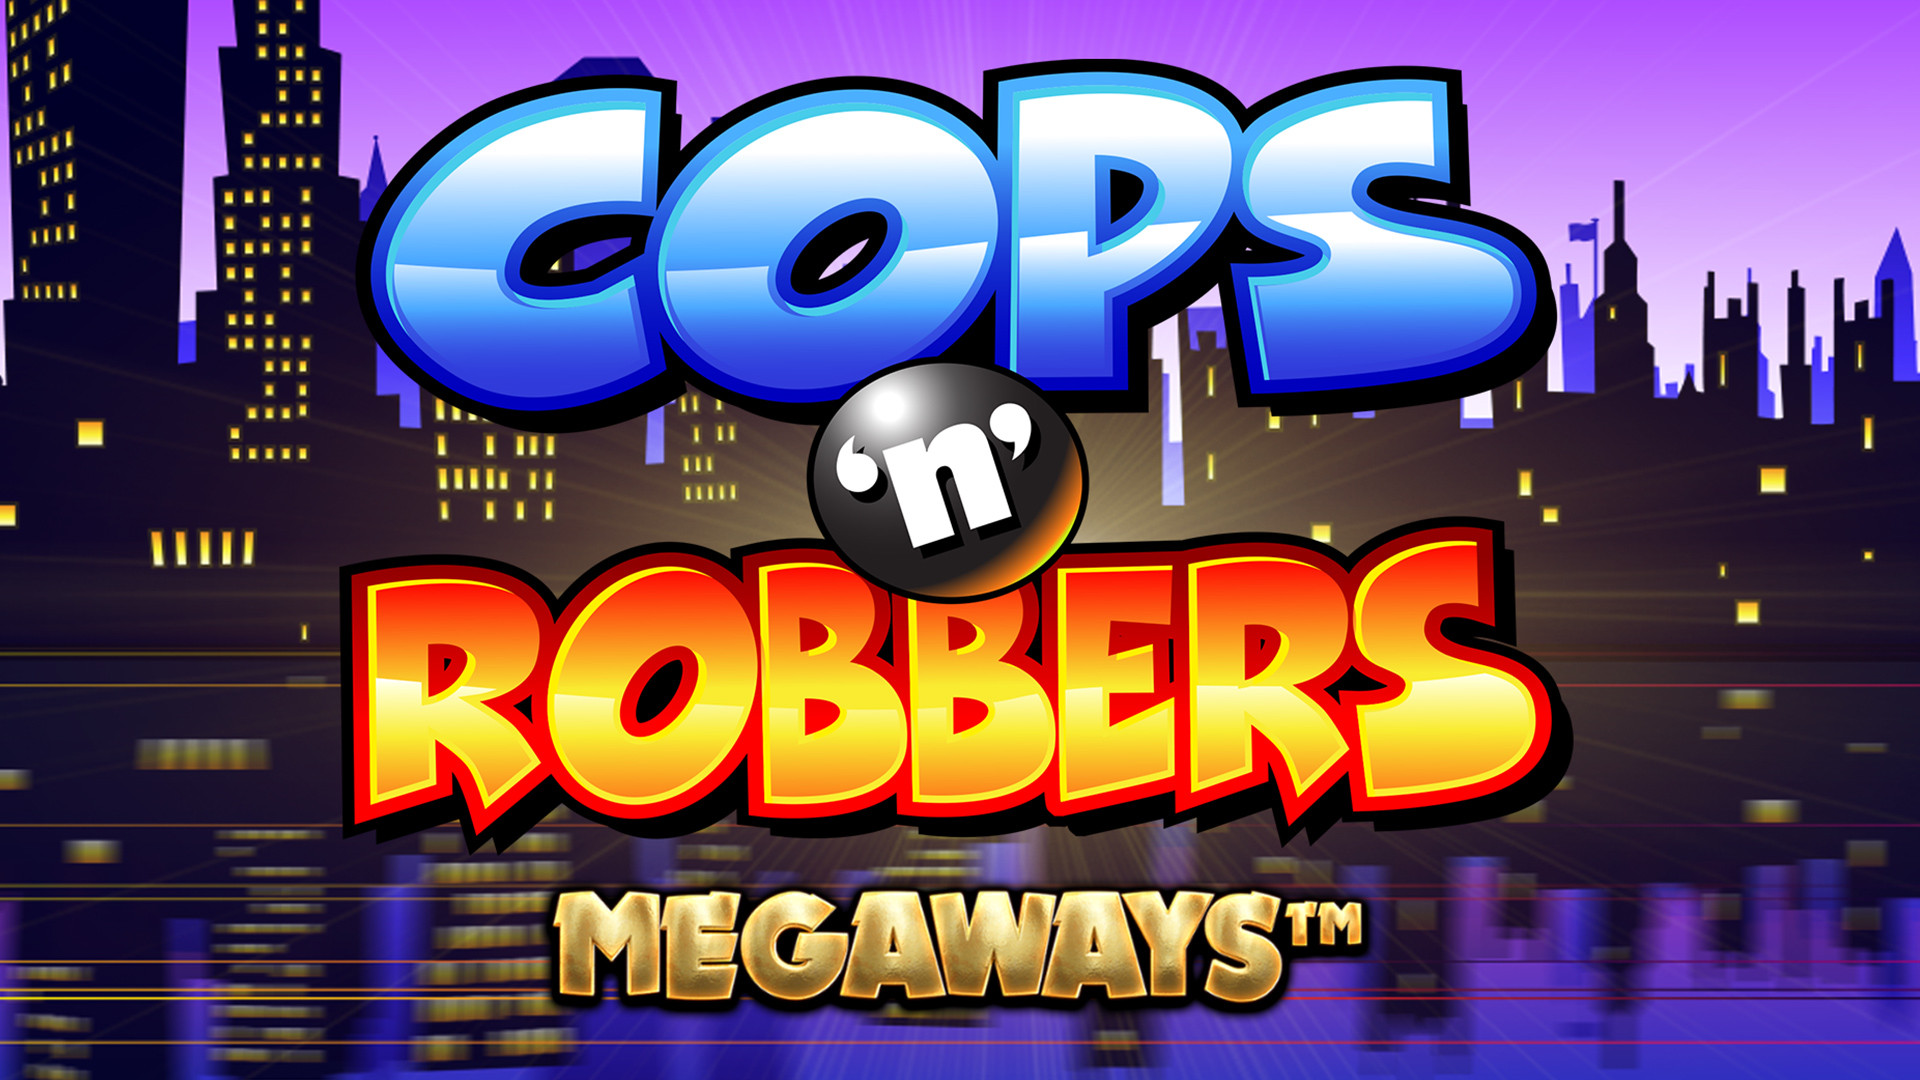 Cops ‘N’ Robbers MEGAWAYS